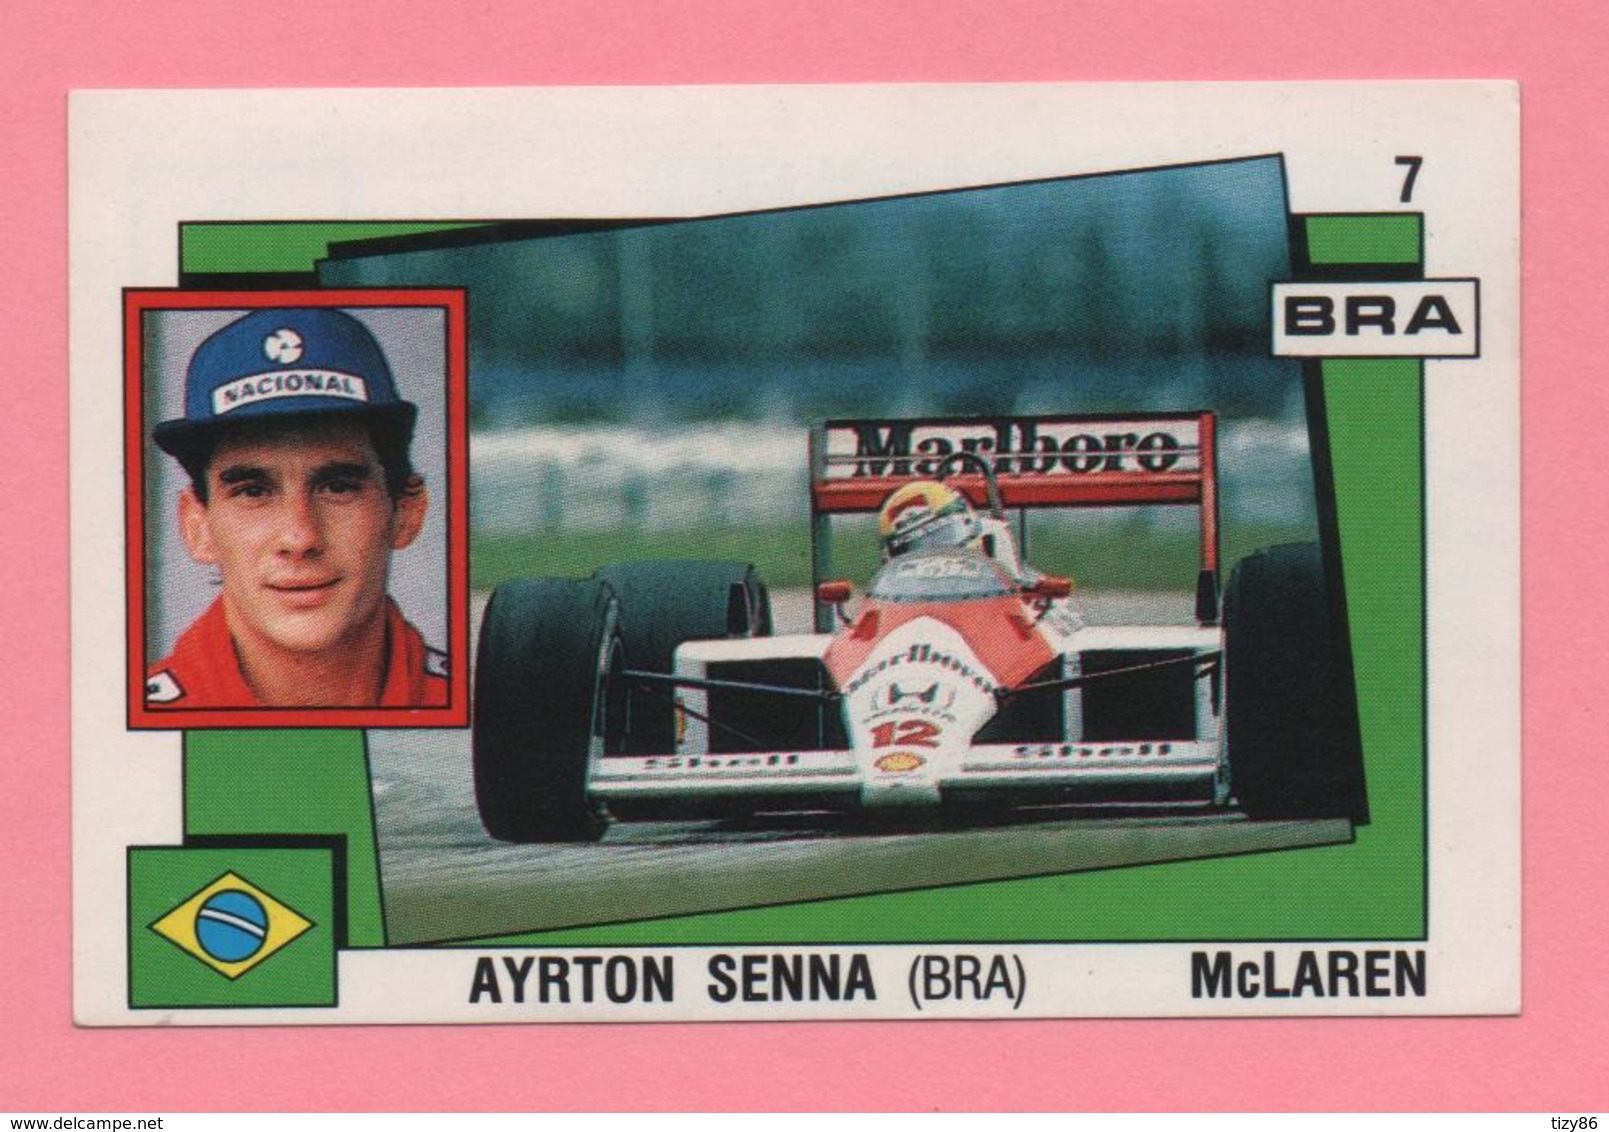 Figurina Panini Supersport - Ayrton Senna Mclaren - Trading Cards